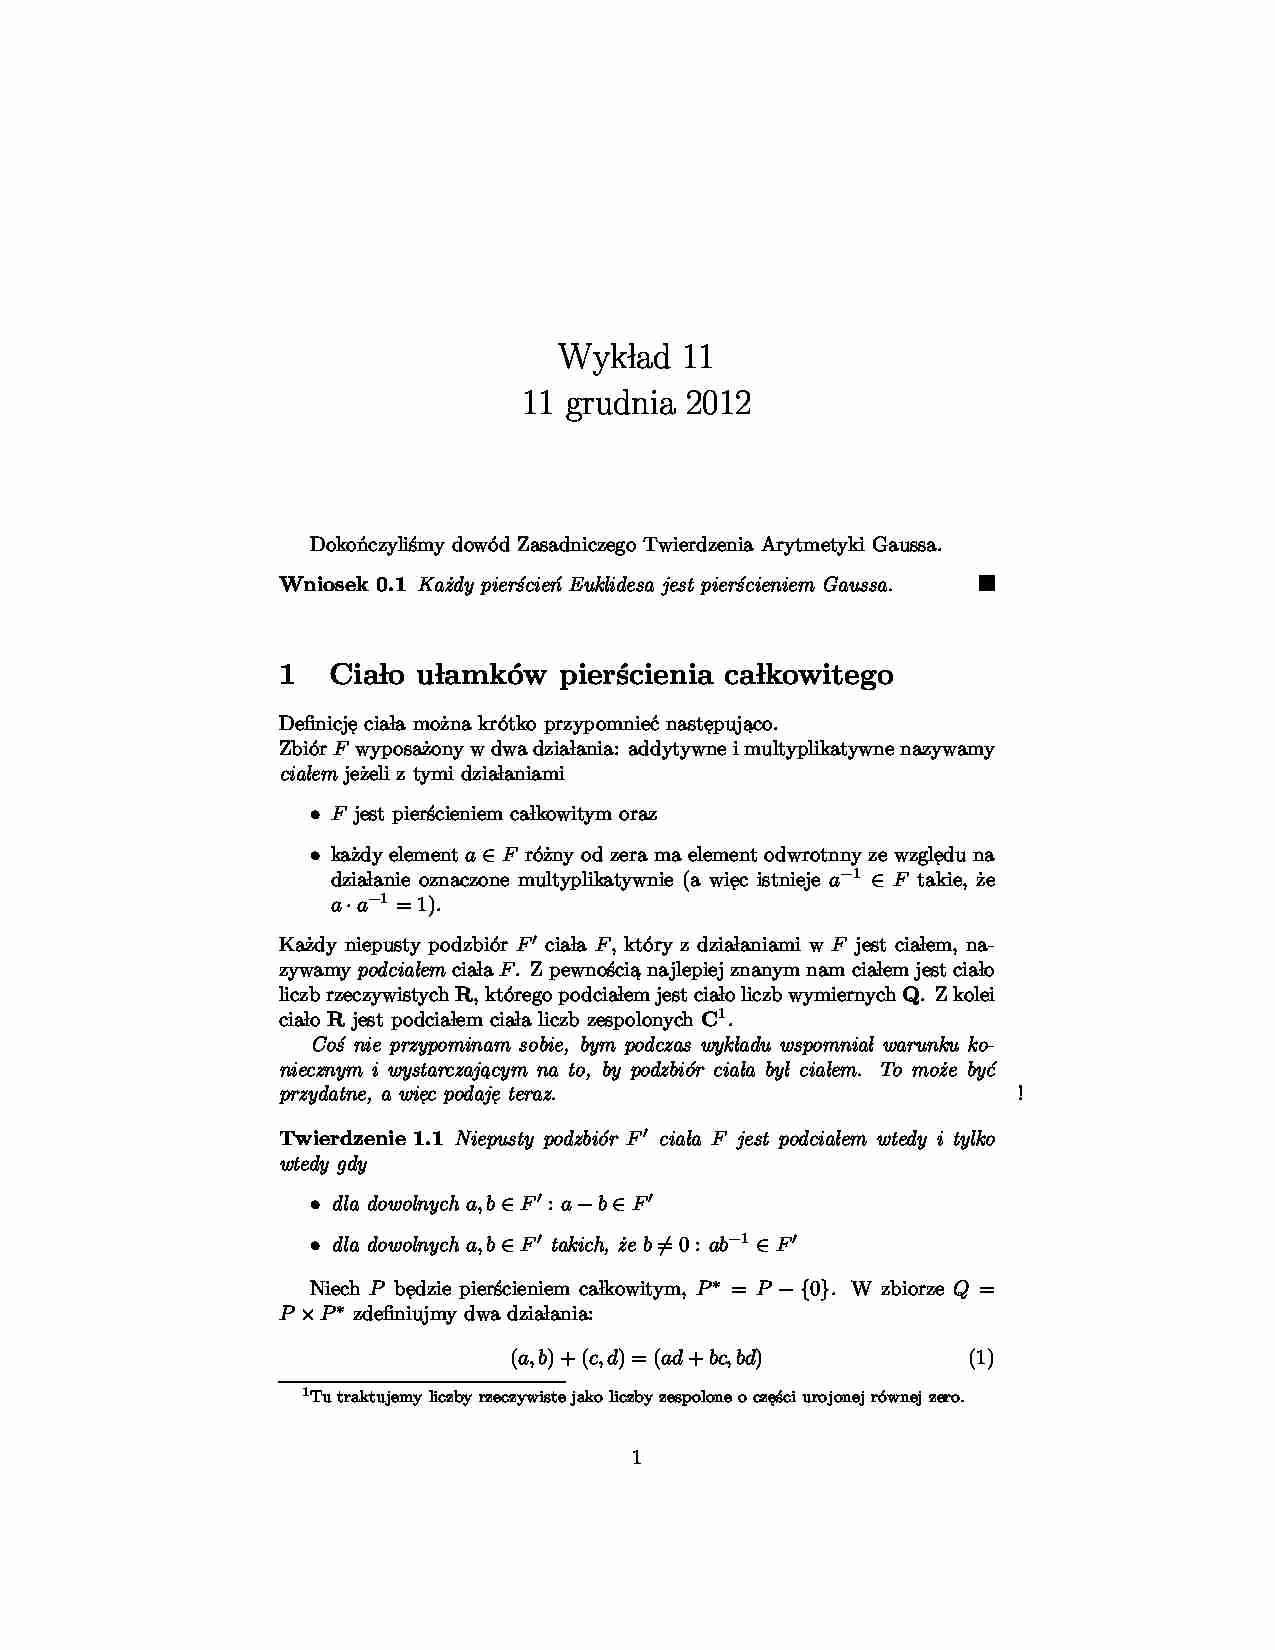 Zasadnicze twierdzenia Arytmetyki Gaussa - strona 1